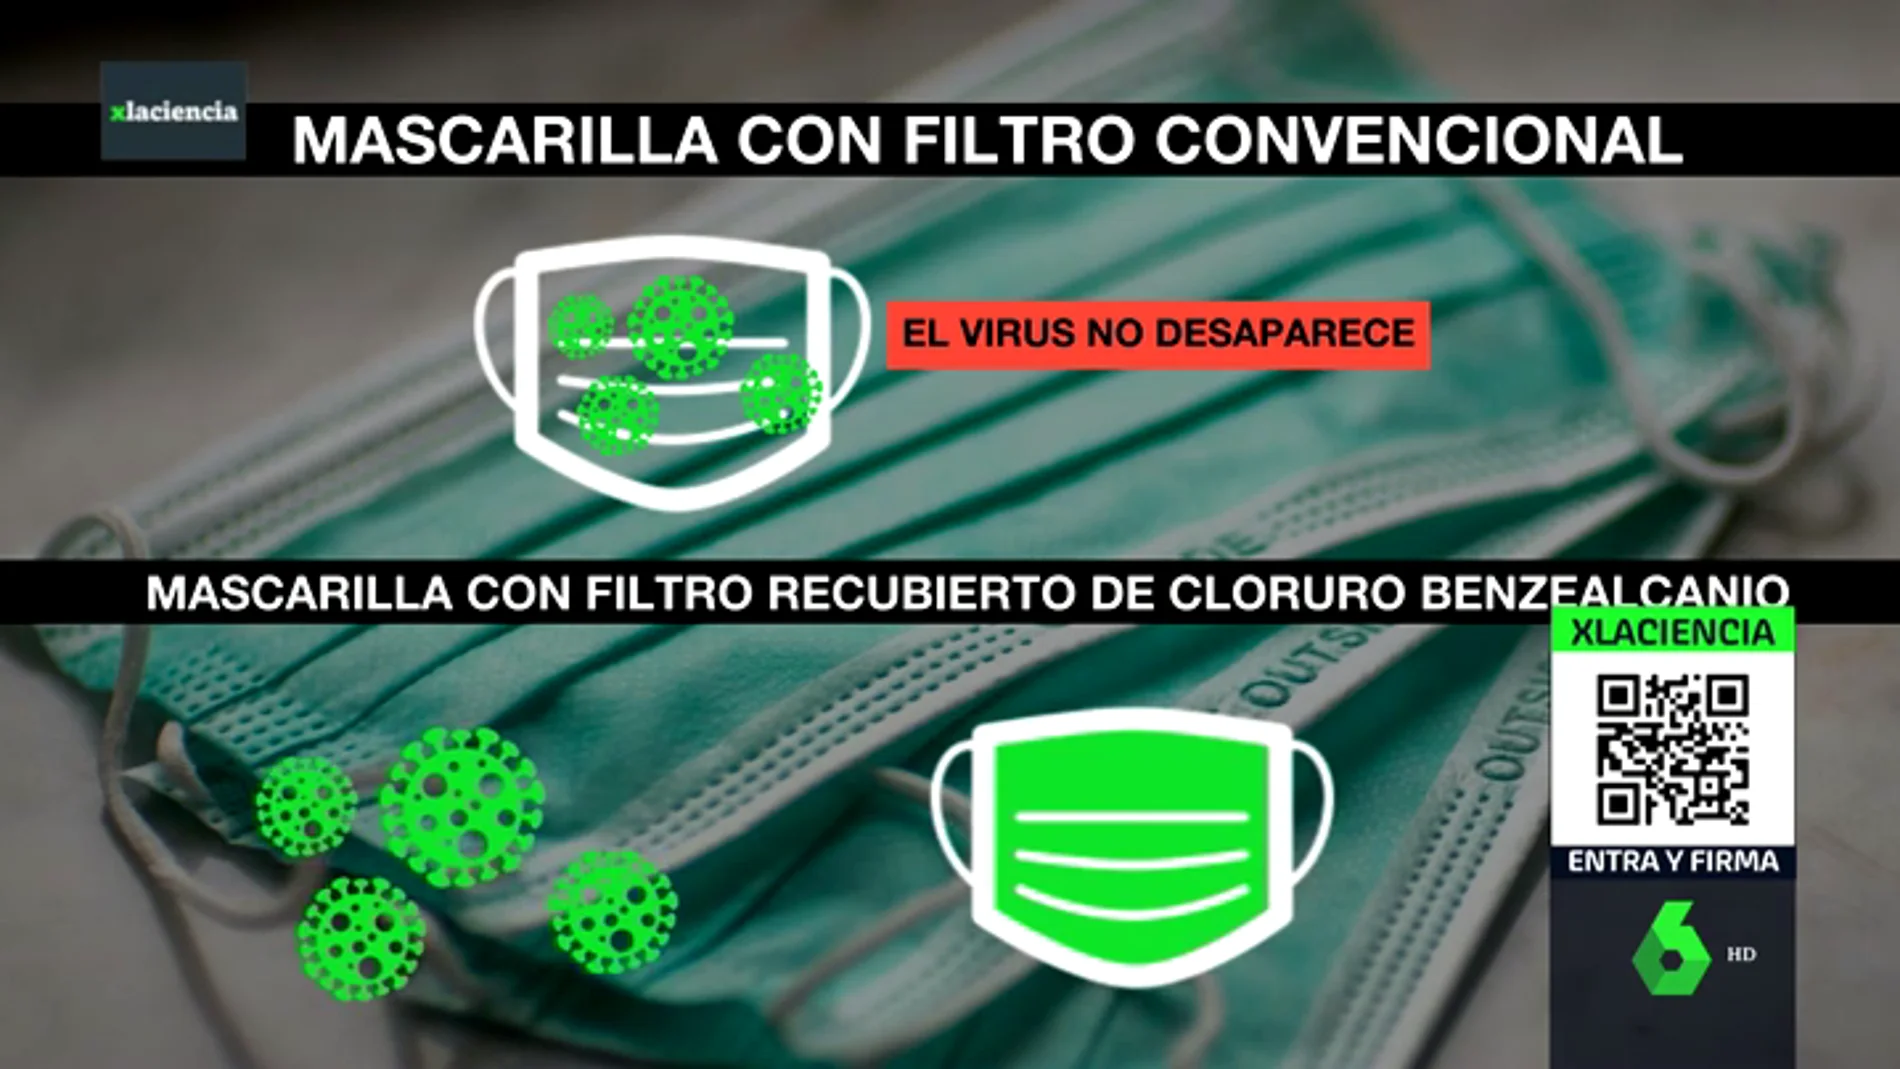 Investigadores españoles idean un filtro para mascarillas capaz de neutralizar al coronavirus